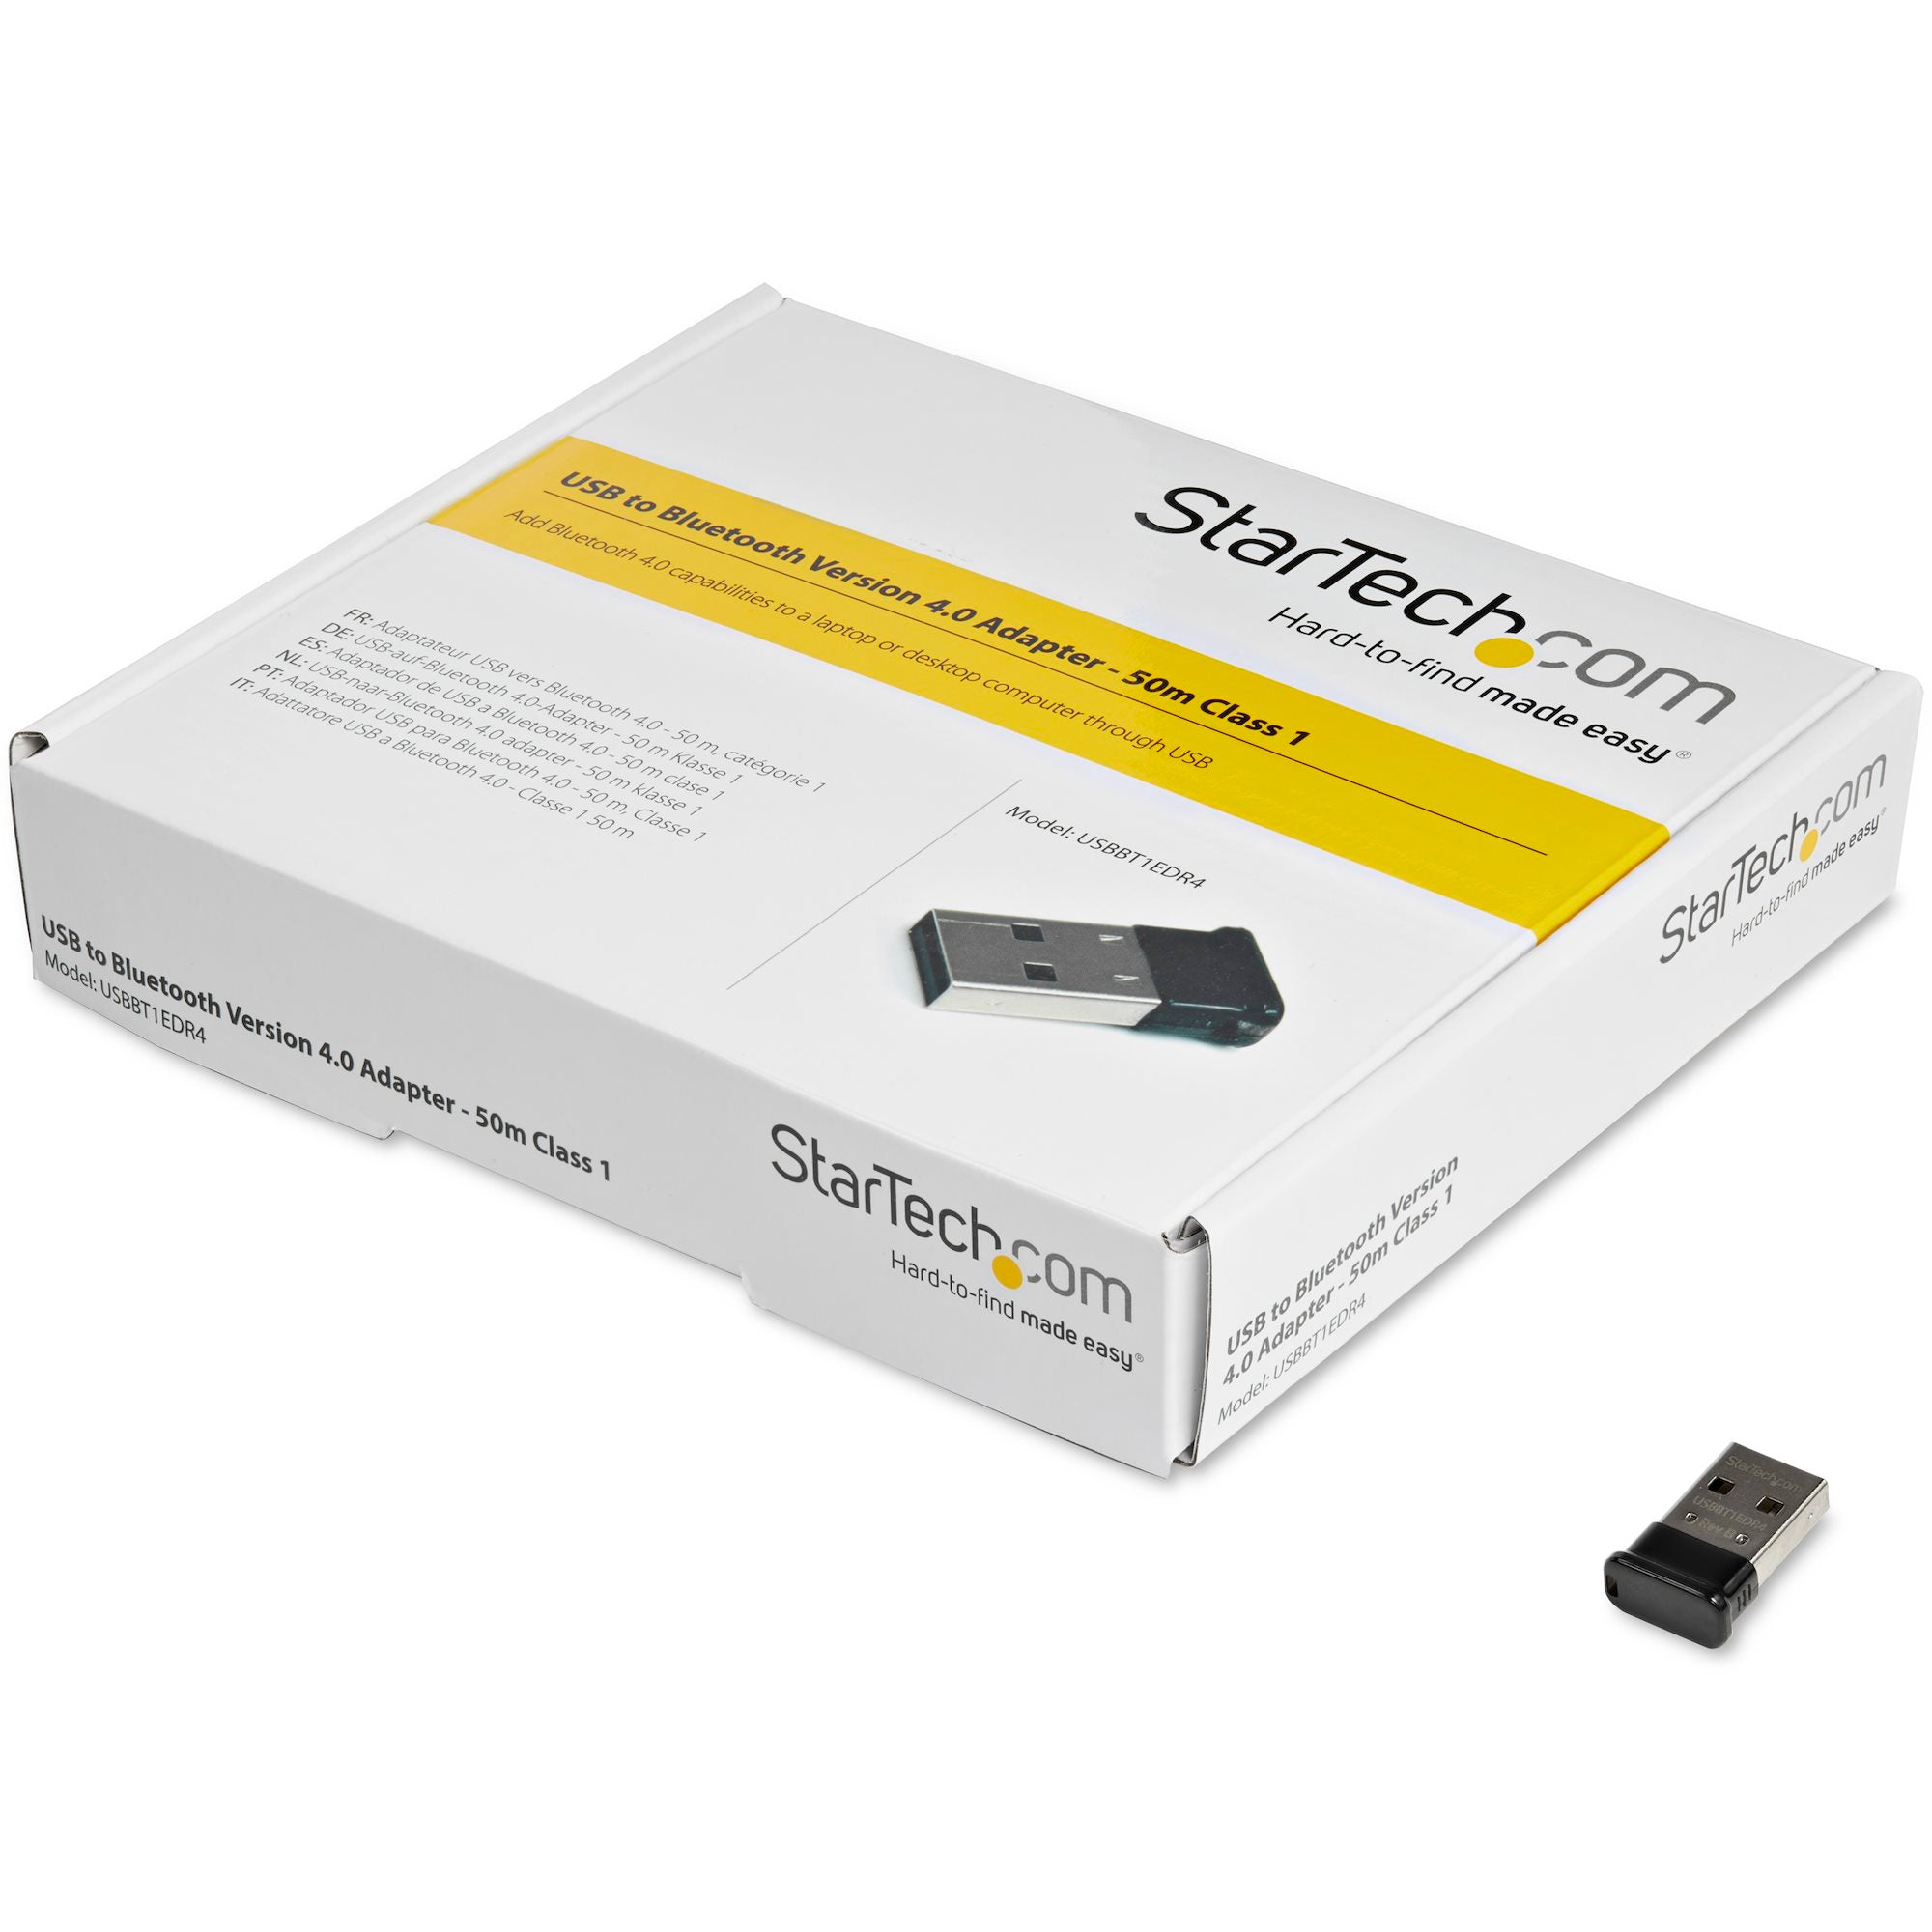 MINI-RECEPTEUR BLUETOOTH 4.0 USB (50M, CLASS1)